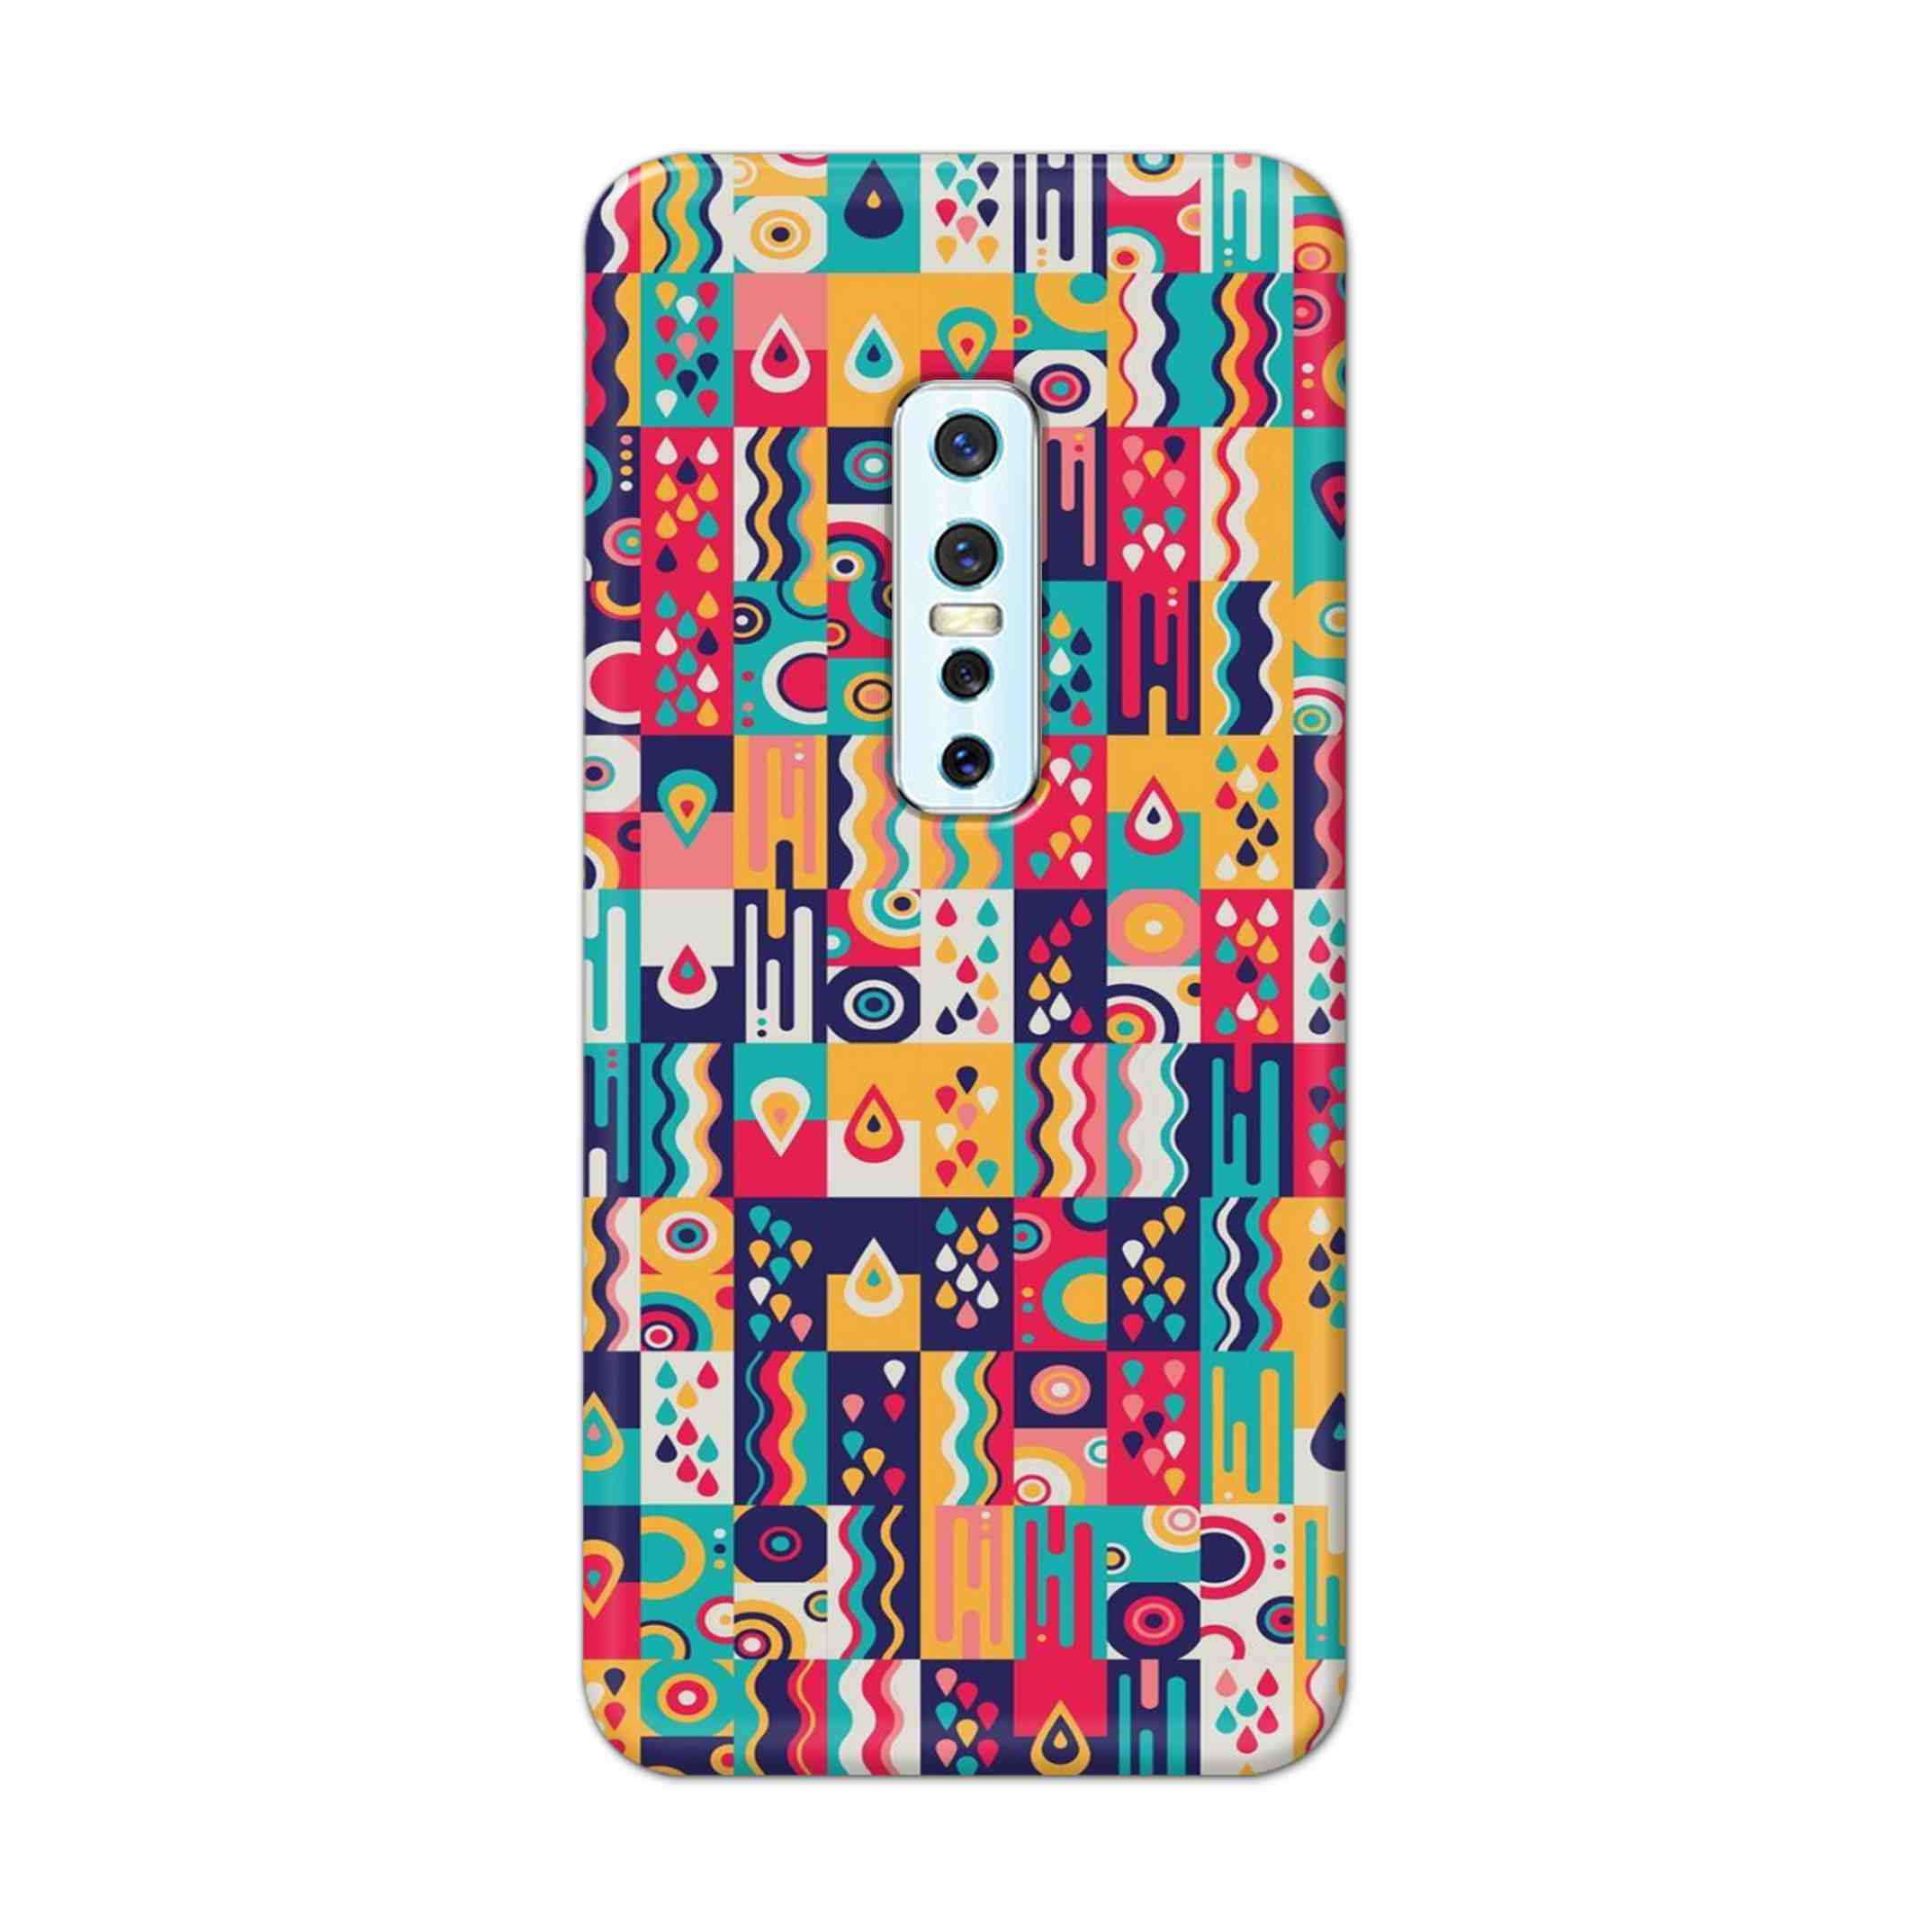 Buy Art Hard Back Mobile Phone Case Cover For Vivo V17 Pro Online